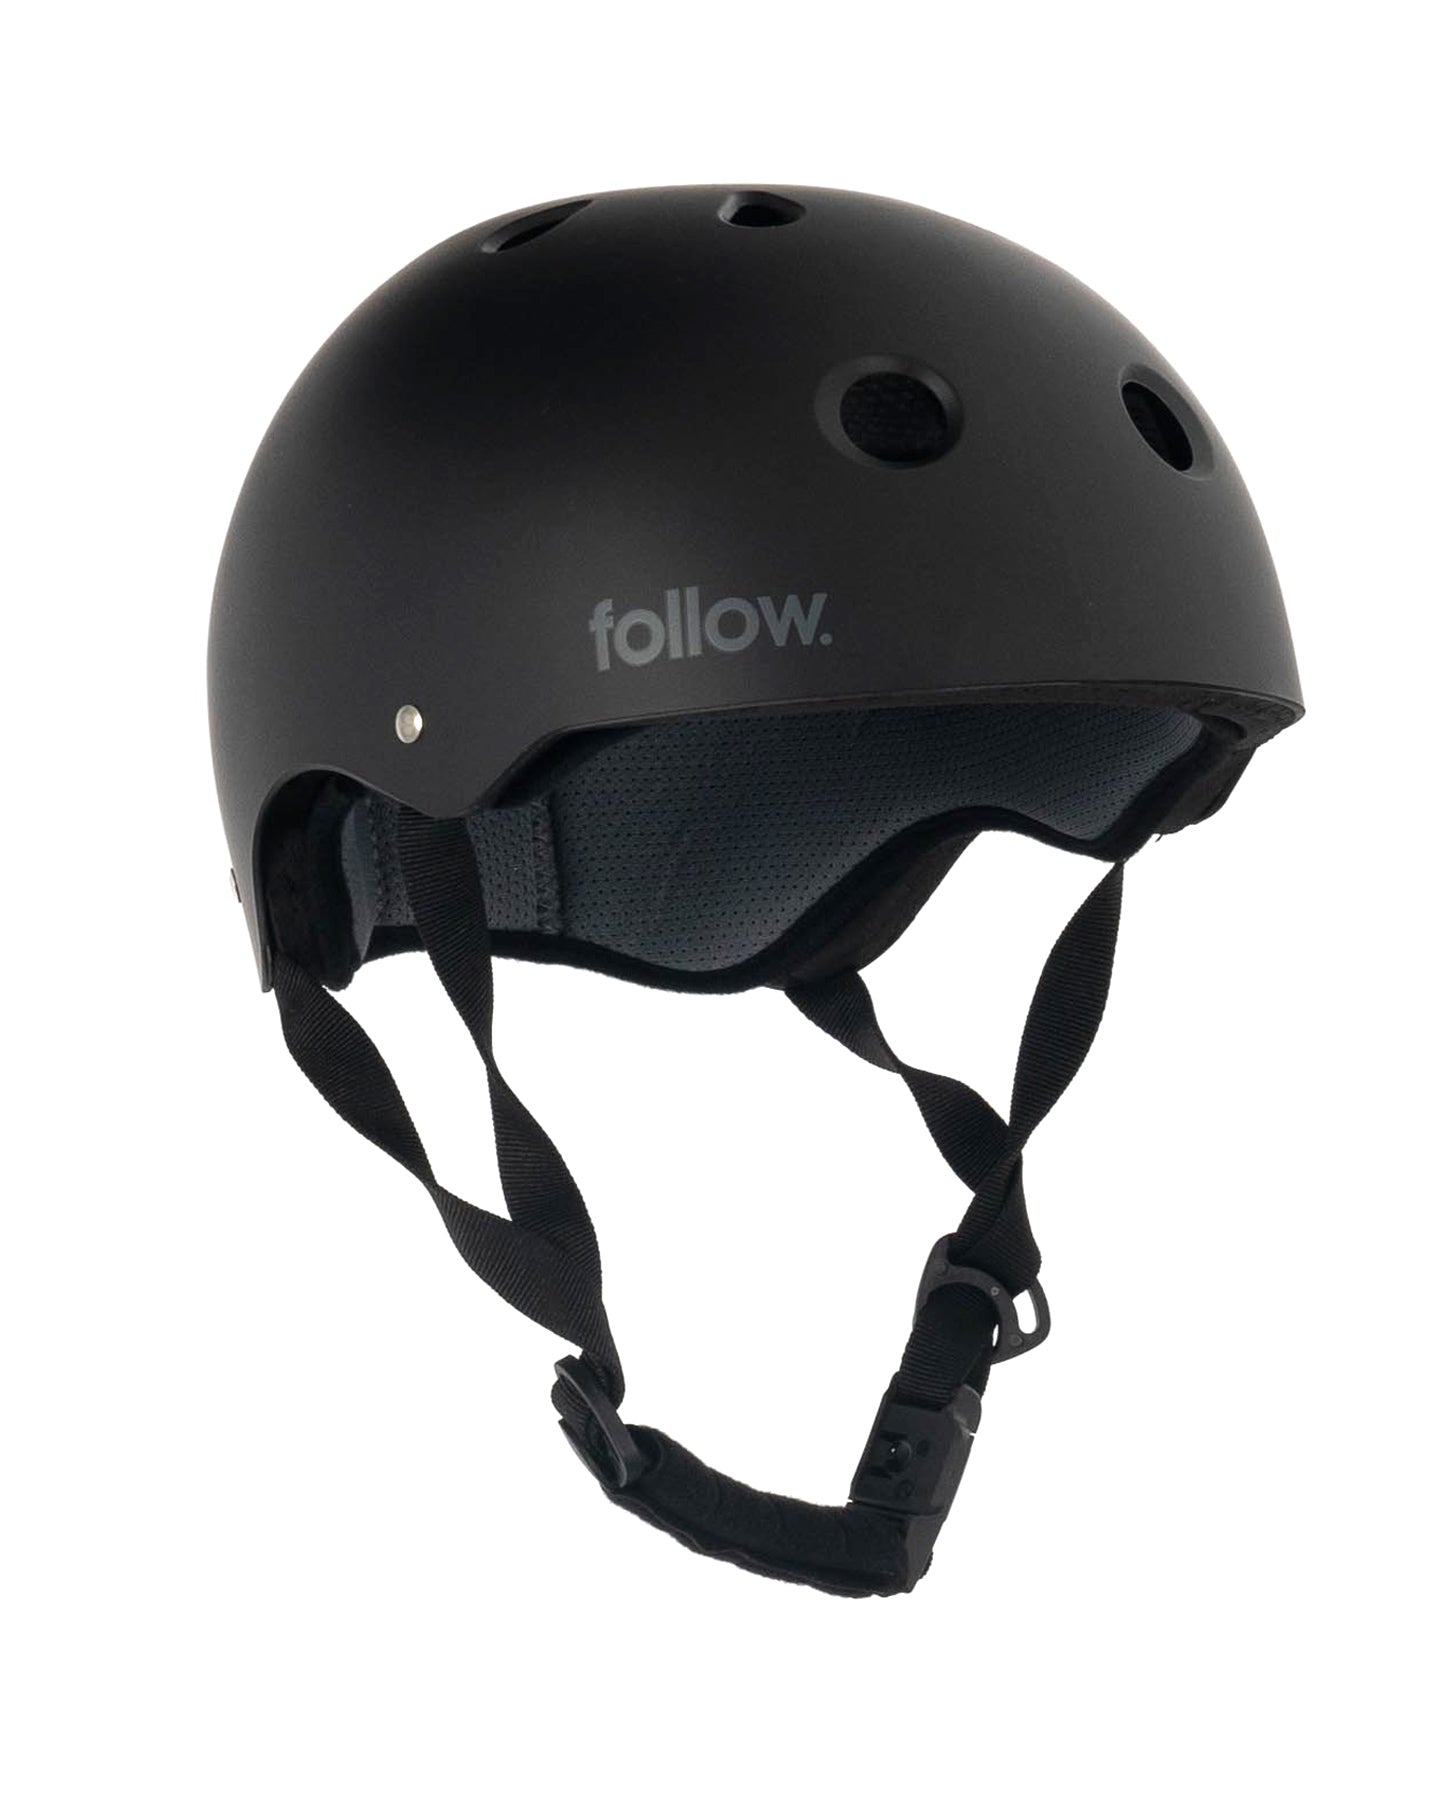 Follow Pro Helmet - Black/Charcoal font